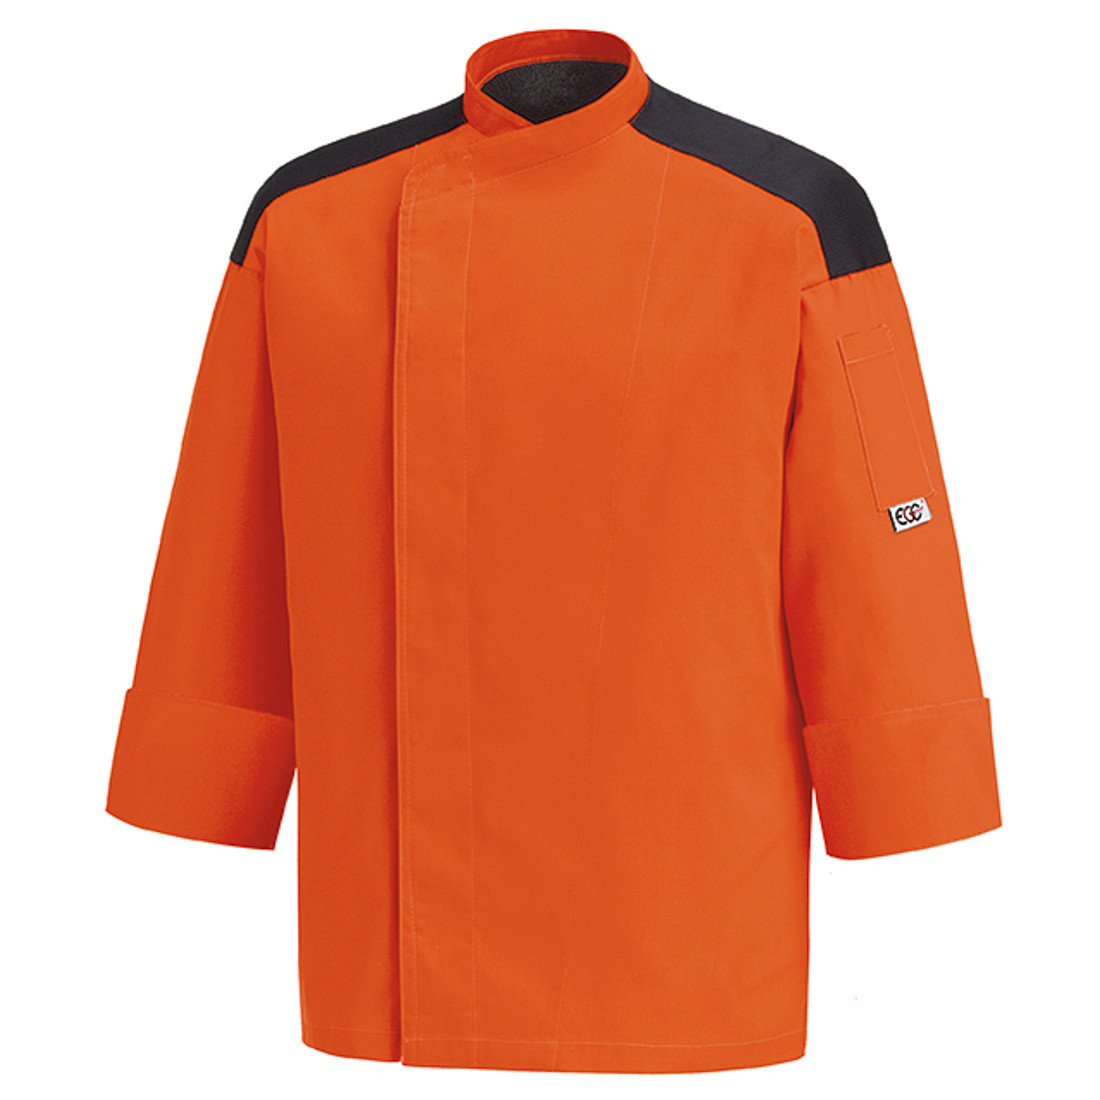 Veste chef First, 65% polyester/35% coton - Les vêtements de protection